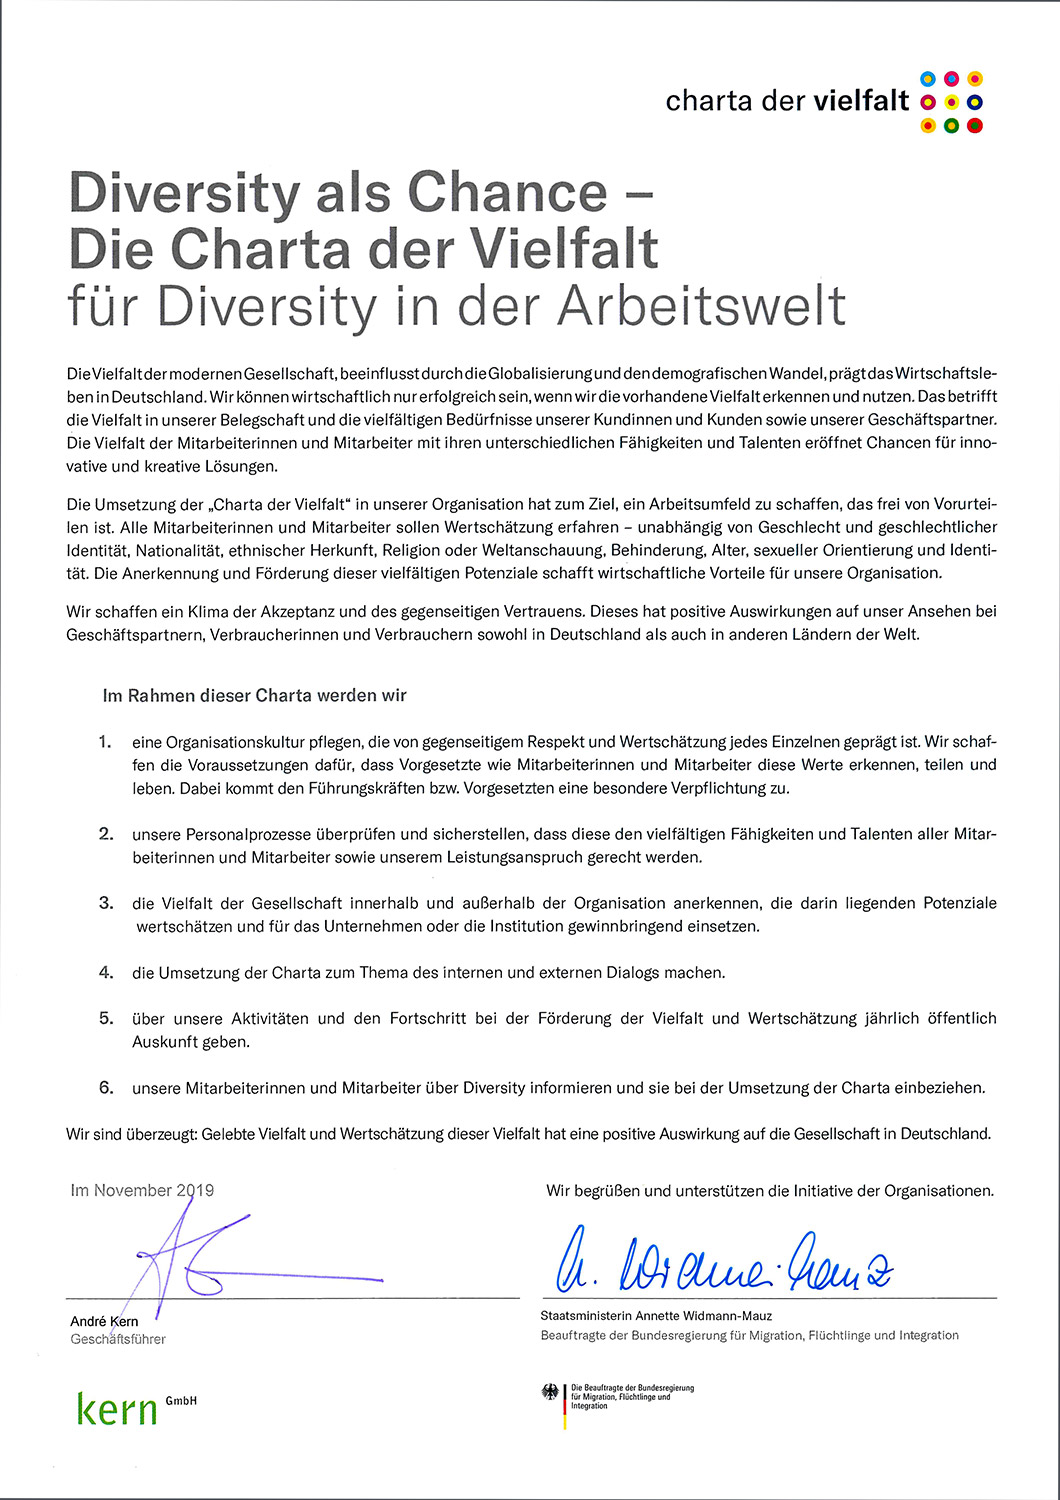 Urkunde "Charta der Vielfalt"